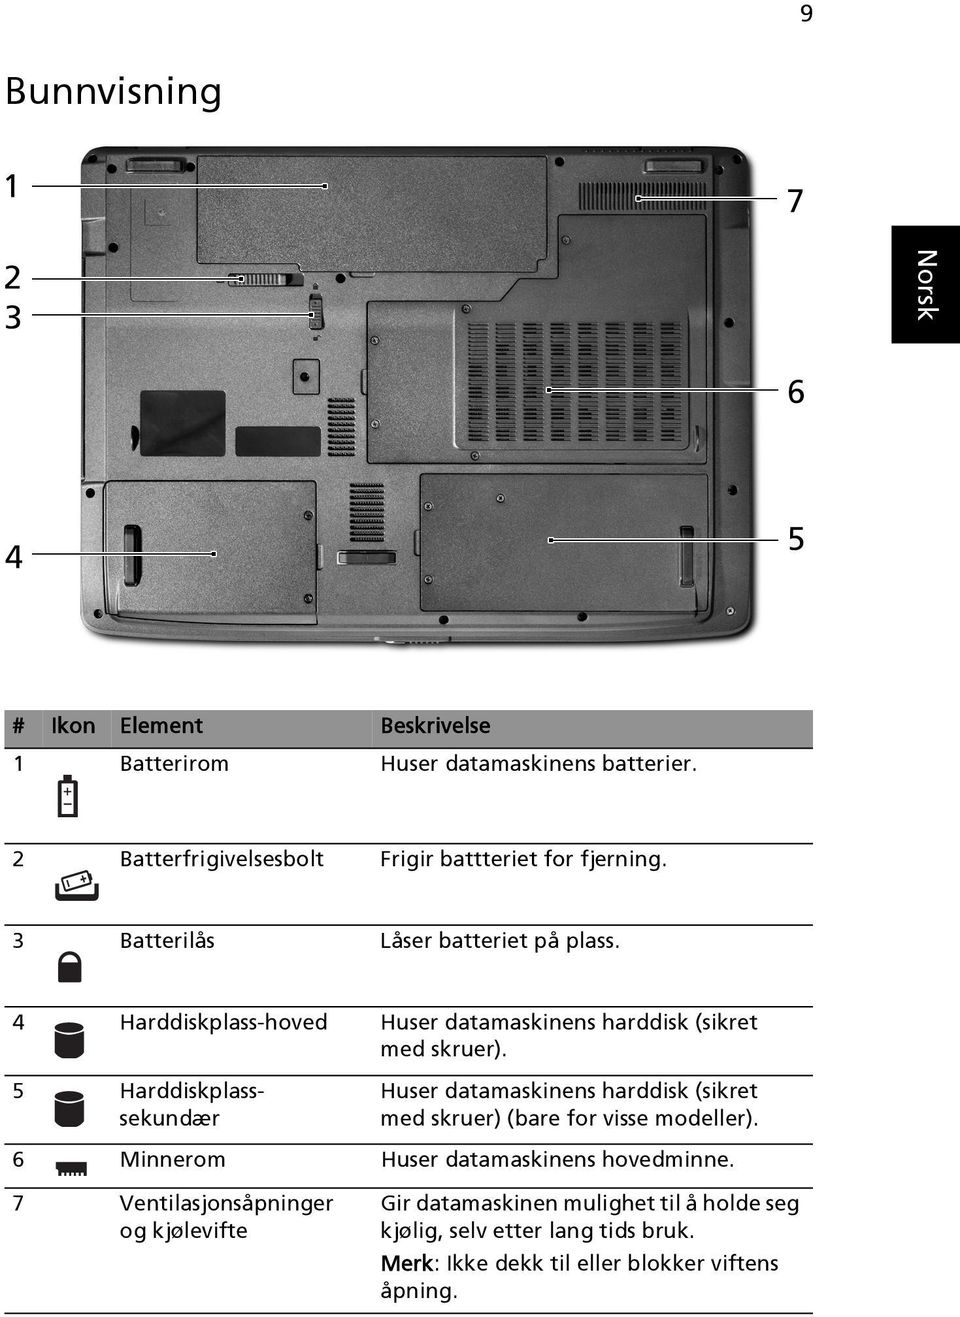 5 Harddiskplasssekundær Huser datamaskinens harddisk (sikret med skruer) (bare for visse modeller).